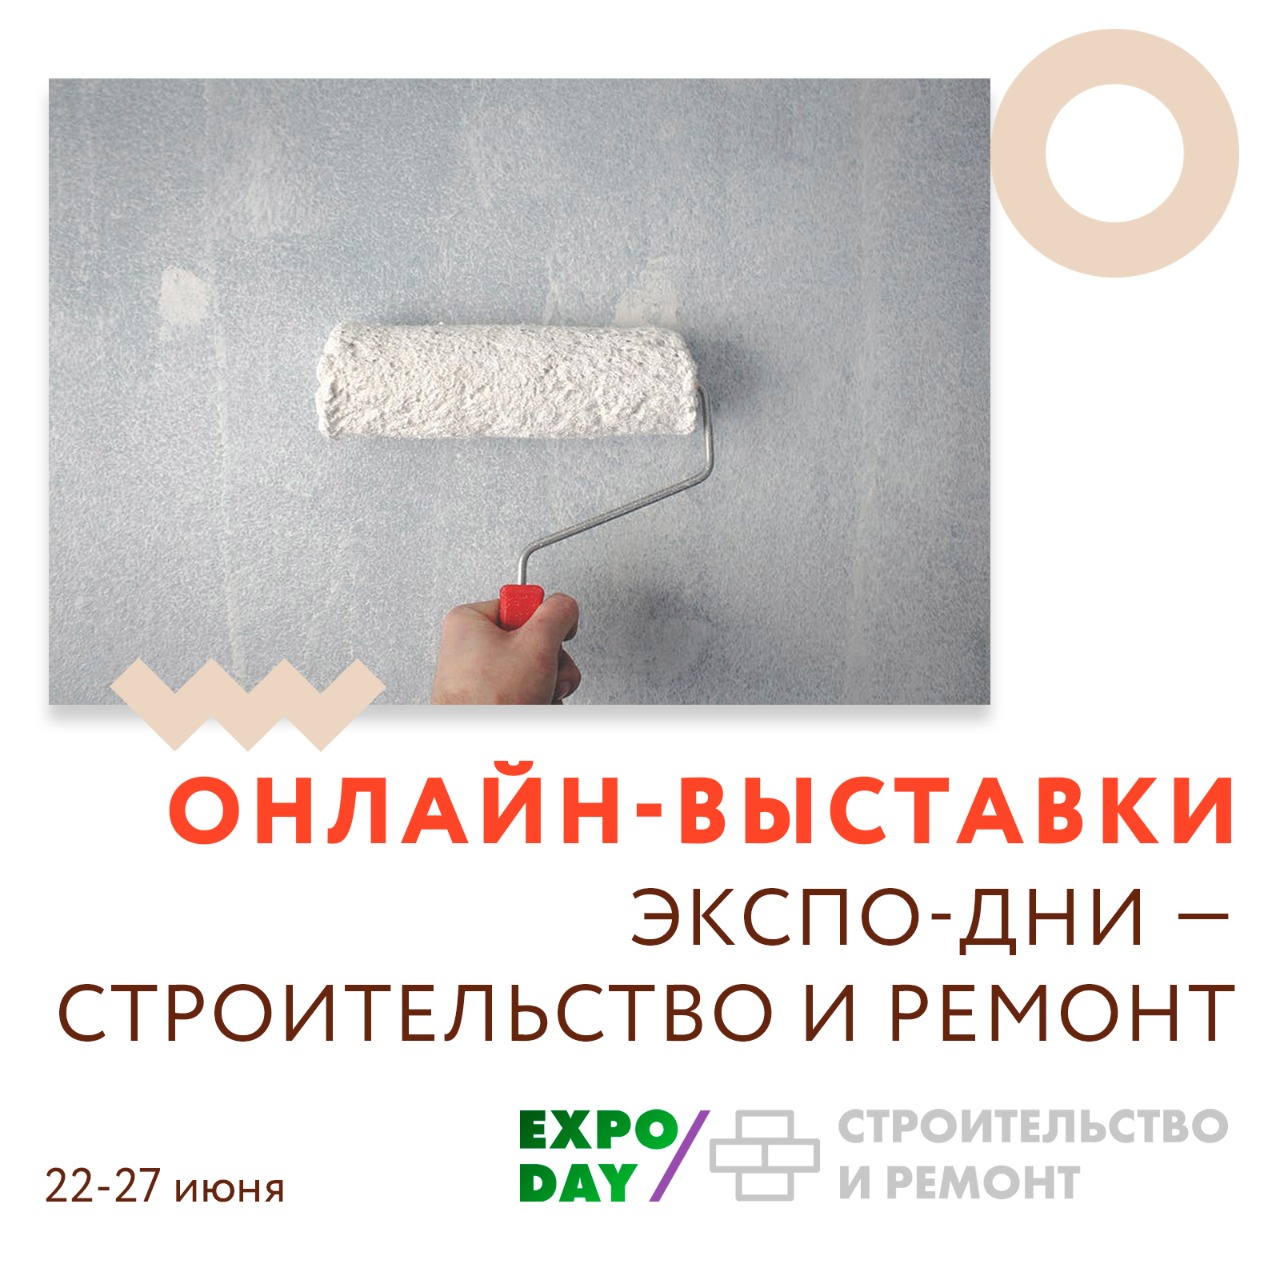 Онлайн-выставки Экспо-дни "Строительство и ремонт"